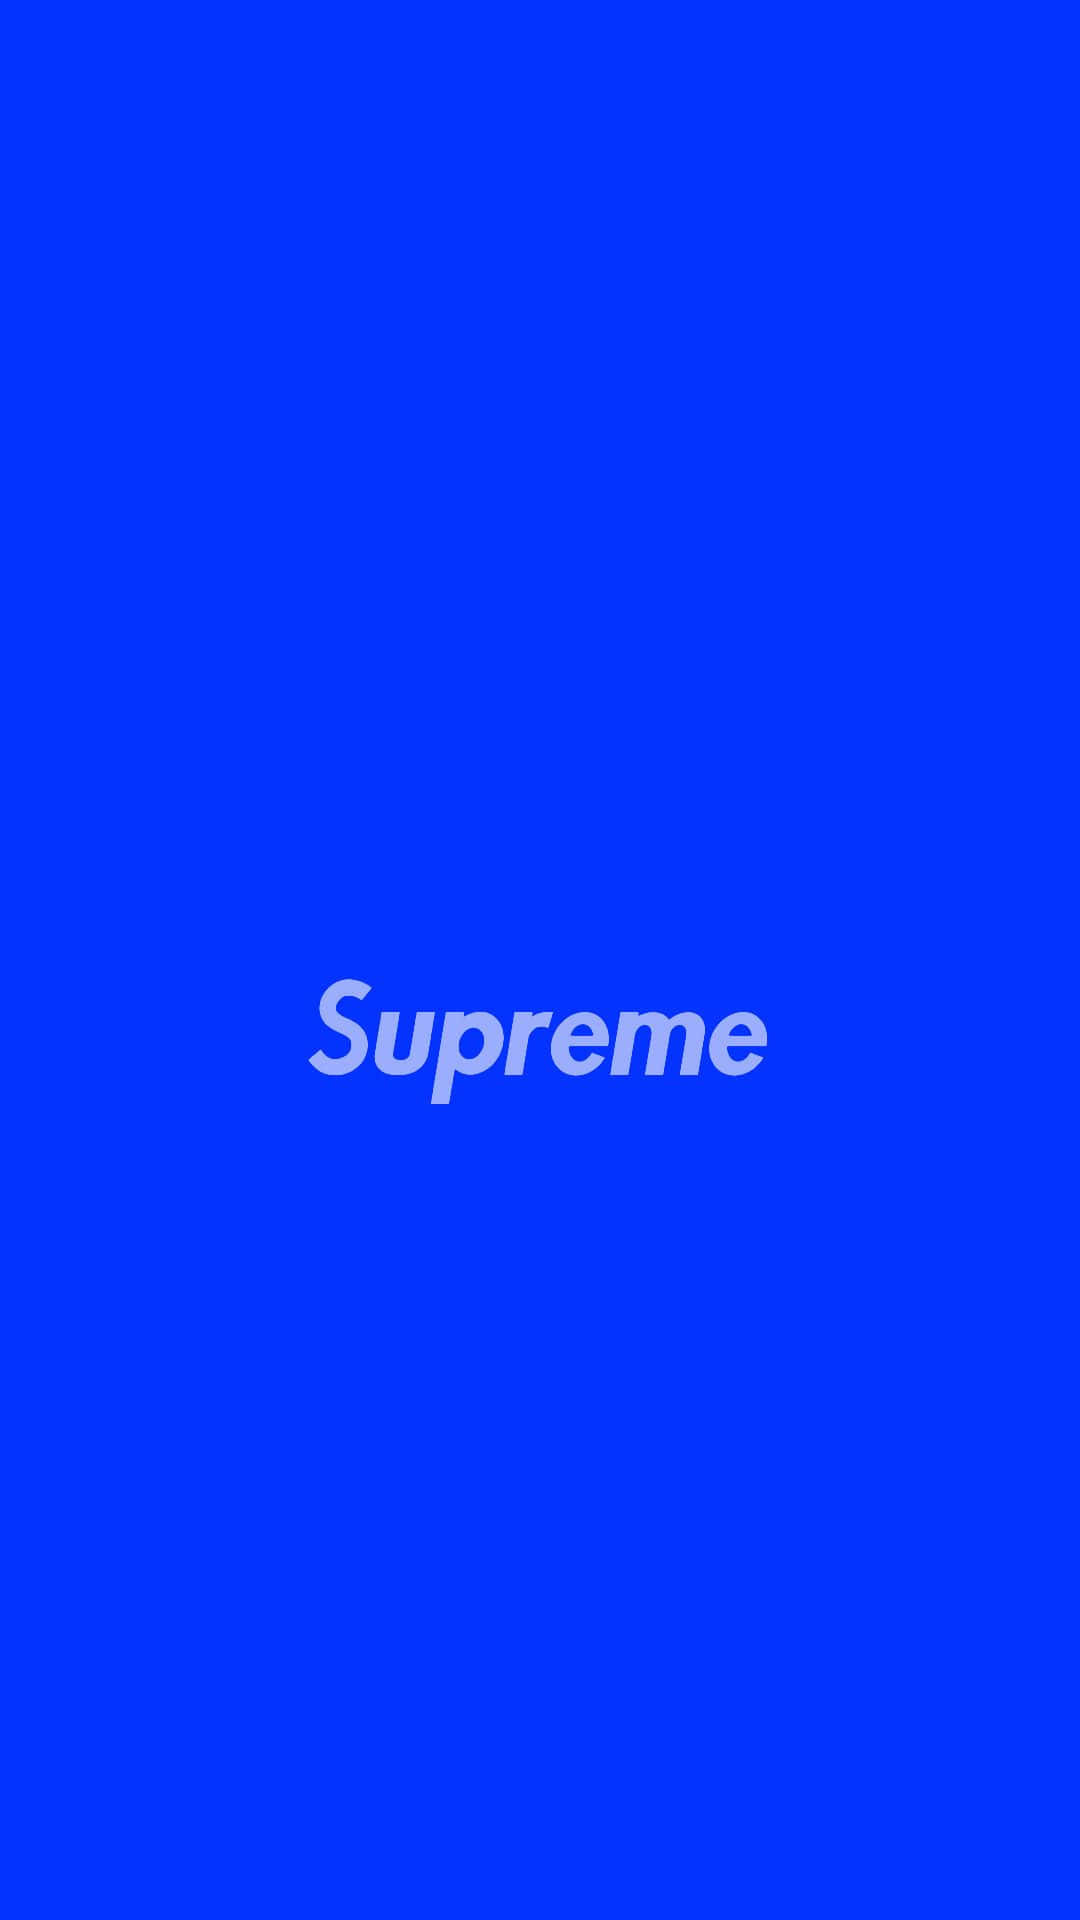 Logoda Supreme Em Um Fundo Azul. Papel de Parede